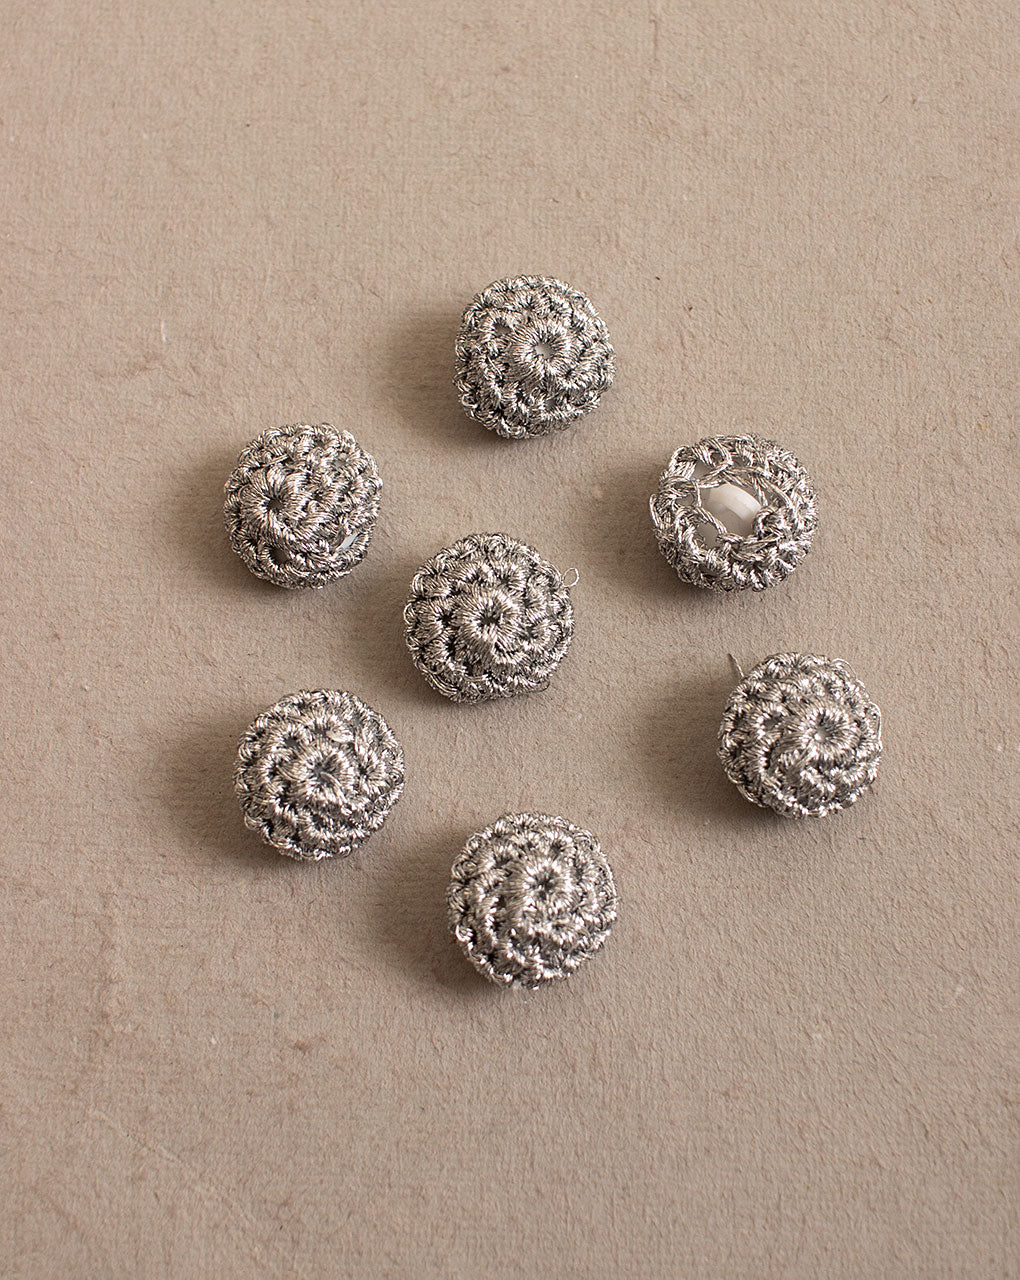 Zari Crochet Hand Embroidered Button ( Single Piece ) - Fabriclore.com